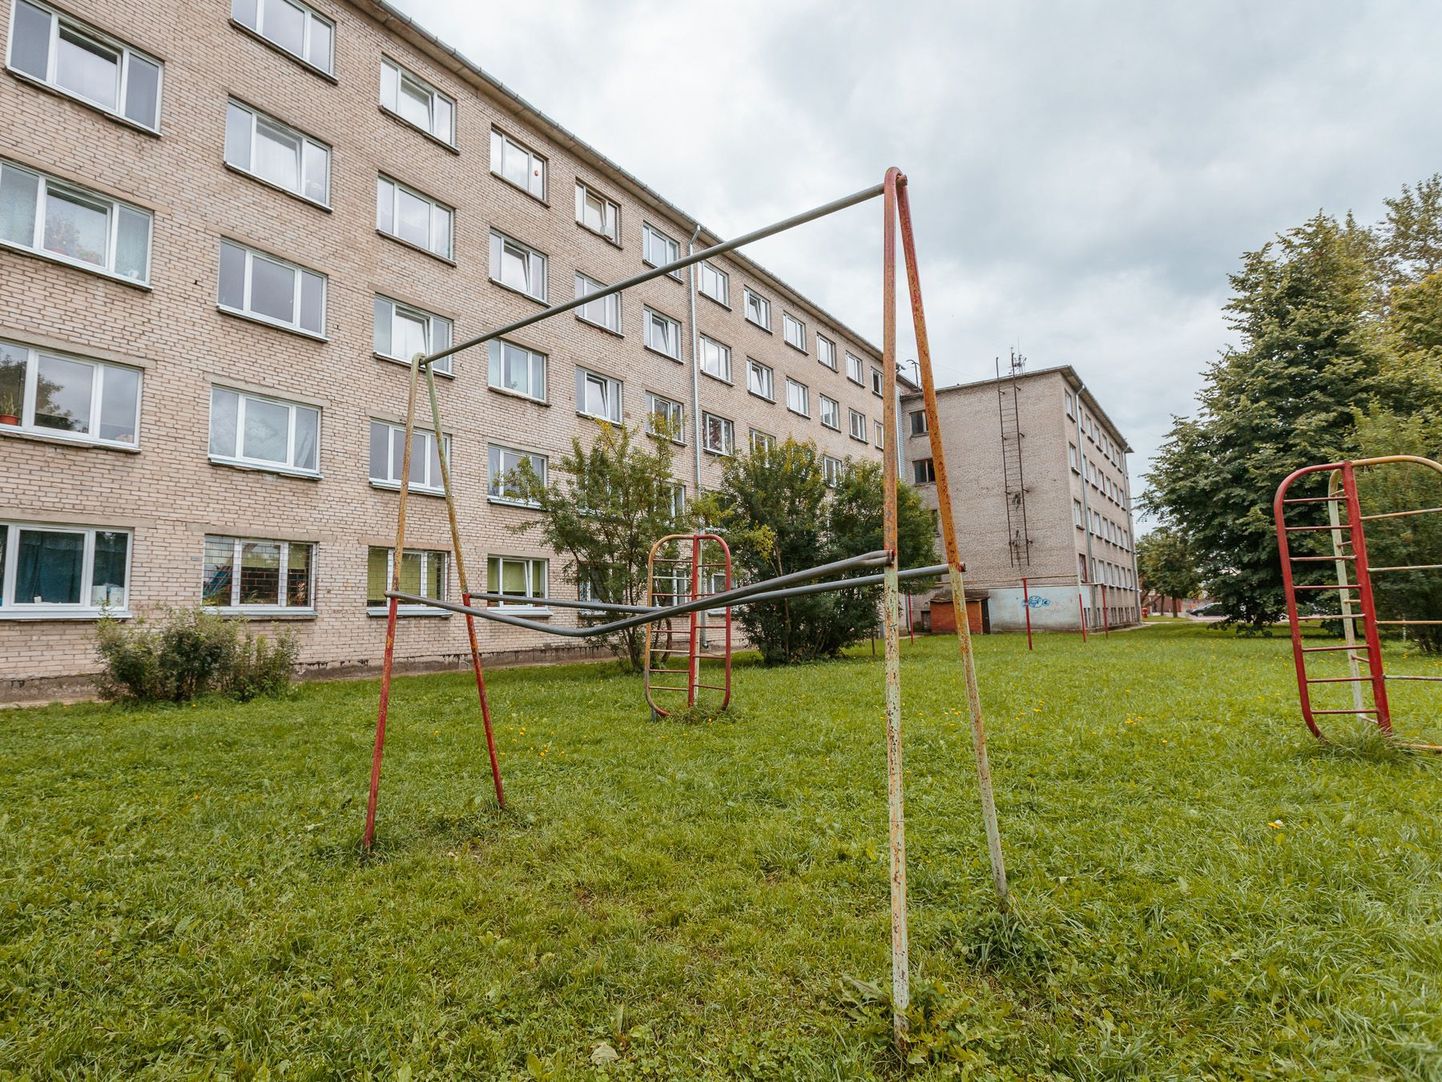 Ühiselamu Narvas aadressil Energia 6, kust naise surnukeha leiti.